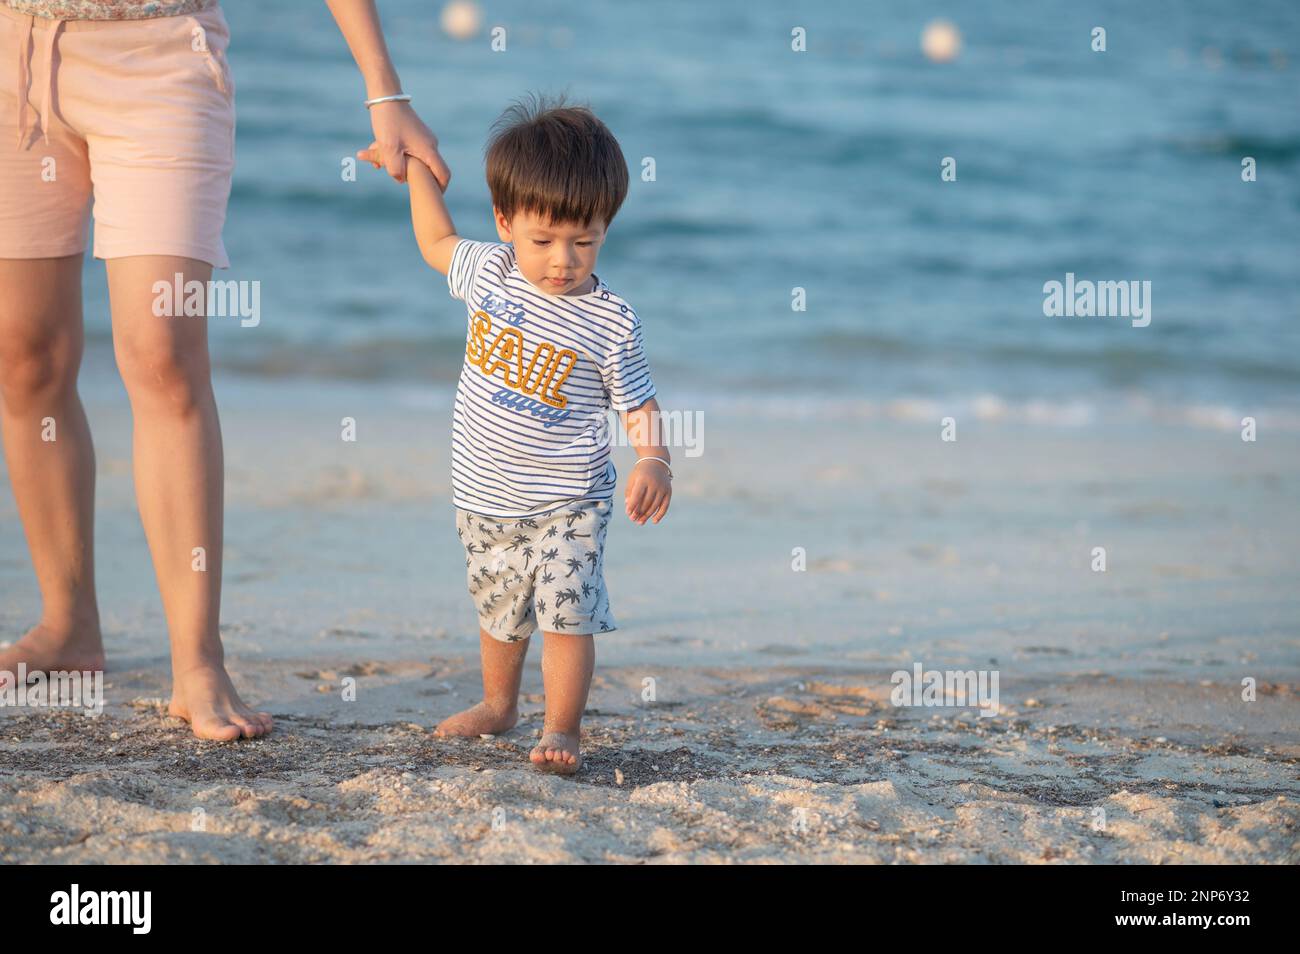 Une mère et son tout-petit fils, portant des vêtements décontractés, marchent main dans la main sur une plage pendant des vacances d'été Banque D'Images